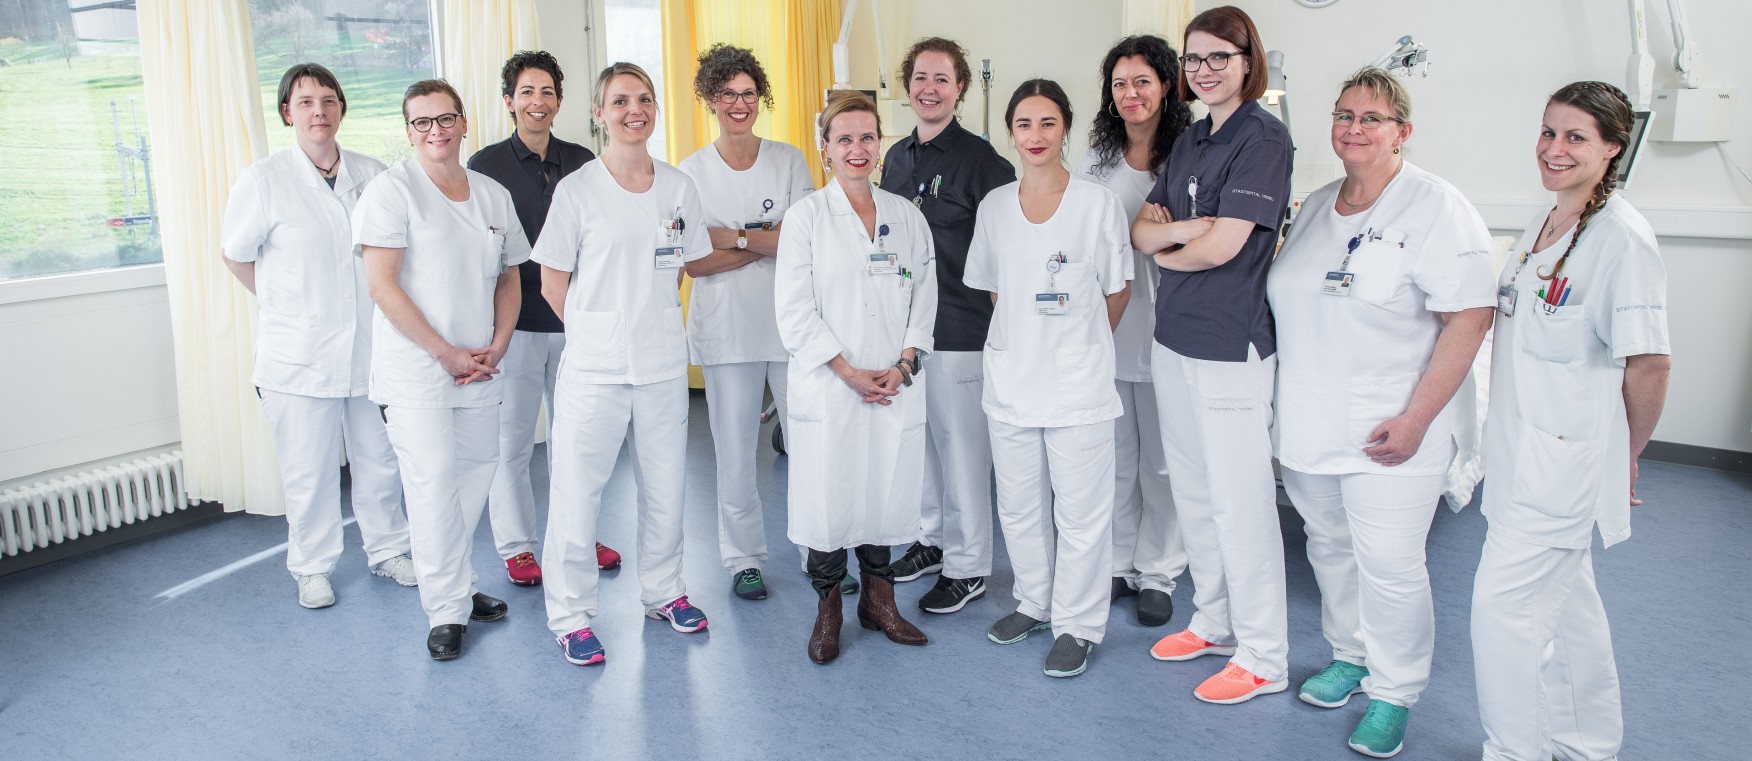 Die Damen der Frauenklinik Triemli Zürich